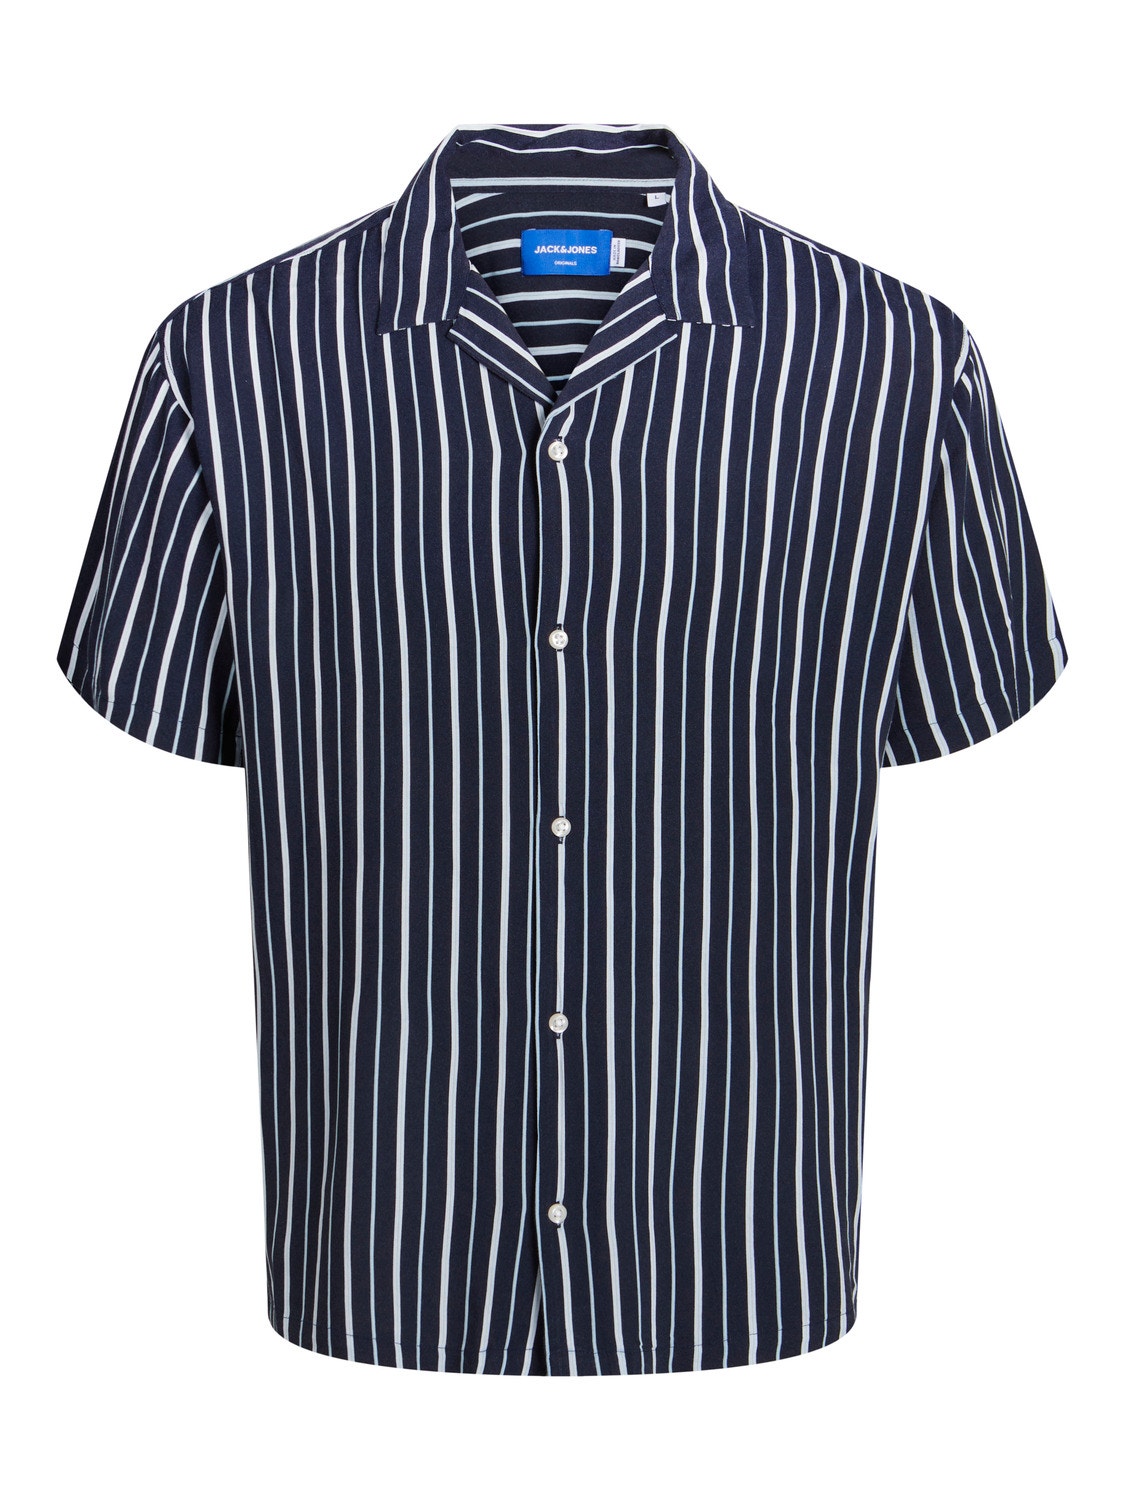 Jack & Jones Resort shirt For boys -Sky Captain - 12255666